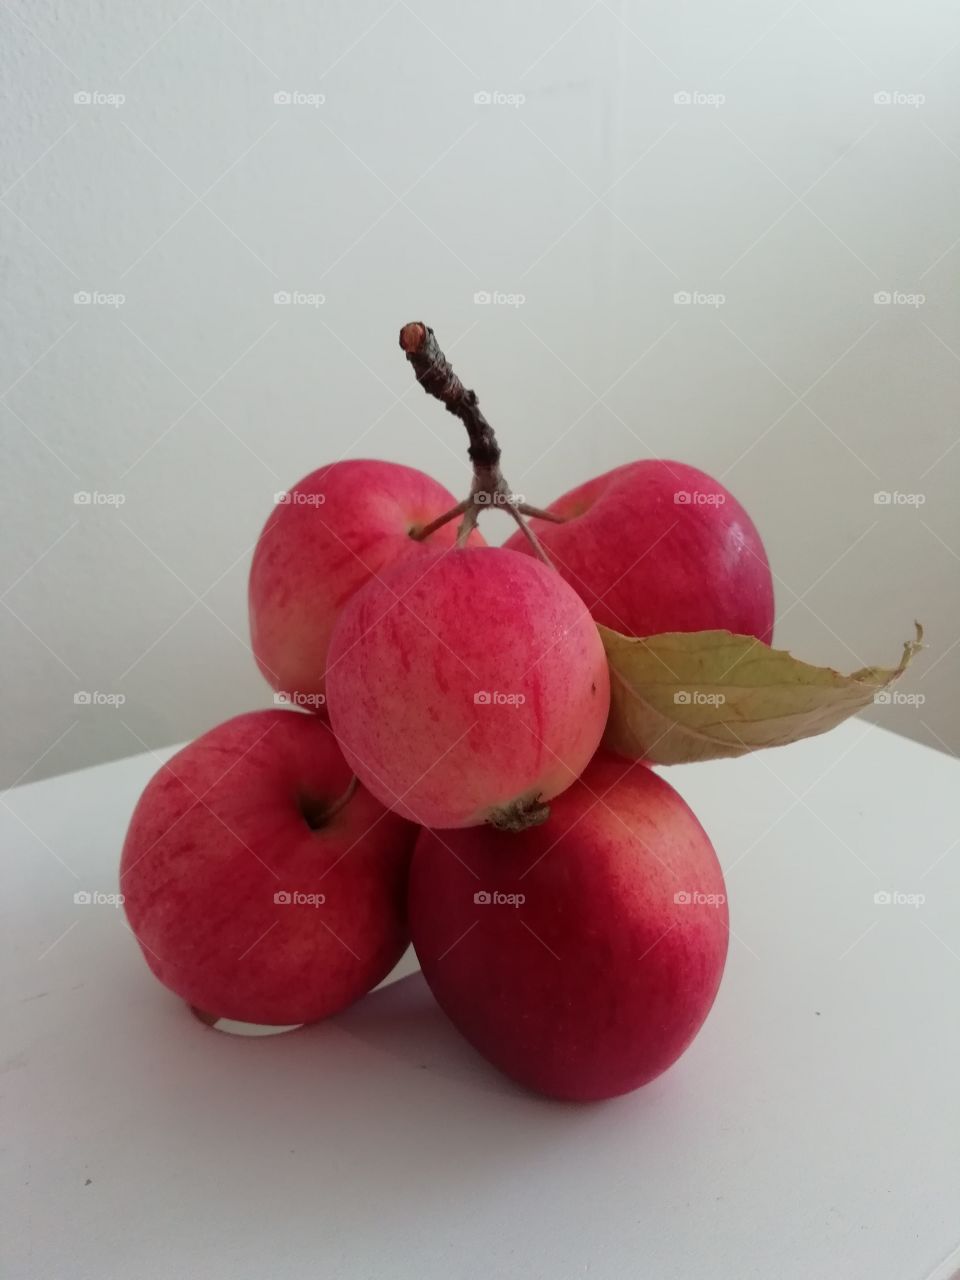 Röda äpplen med blad på kvist mot vit bakgrund.